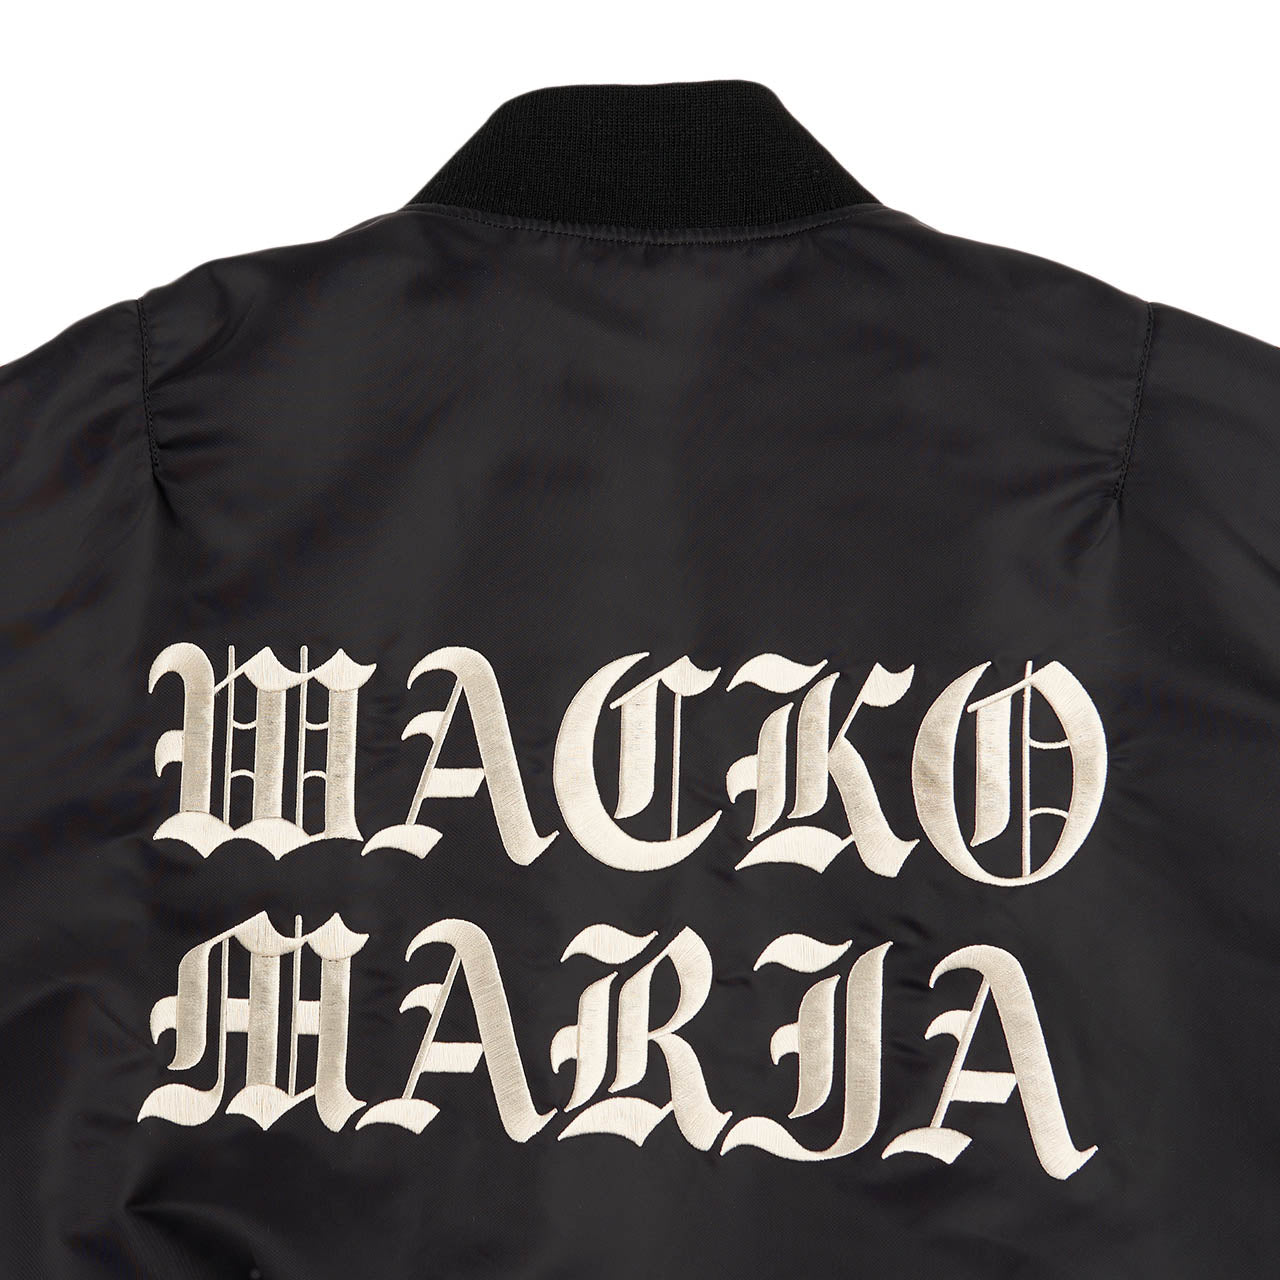 wacko maria ma-1 flight jacket type-3 (black)